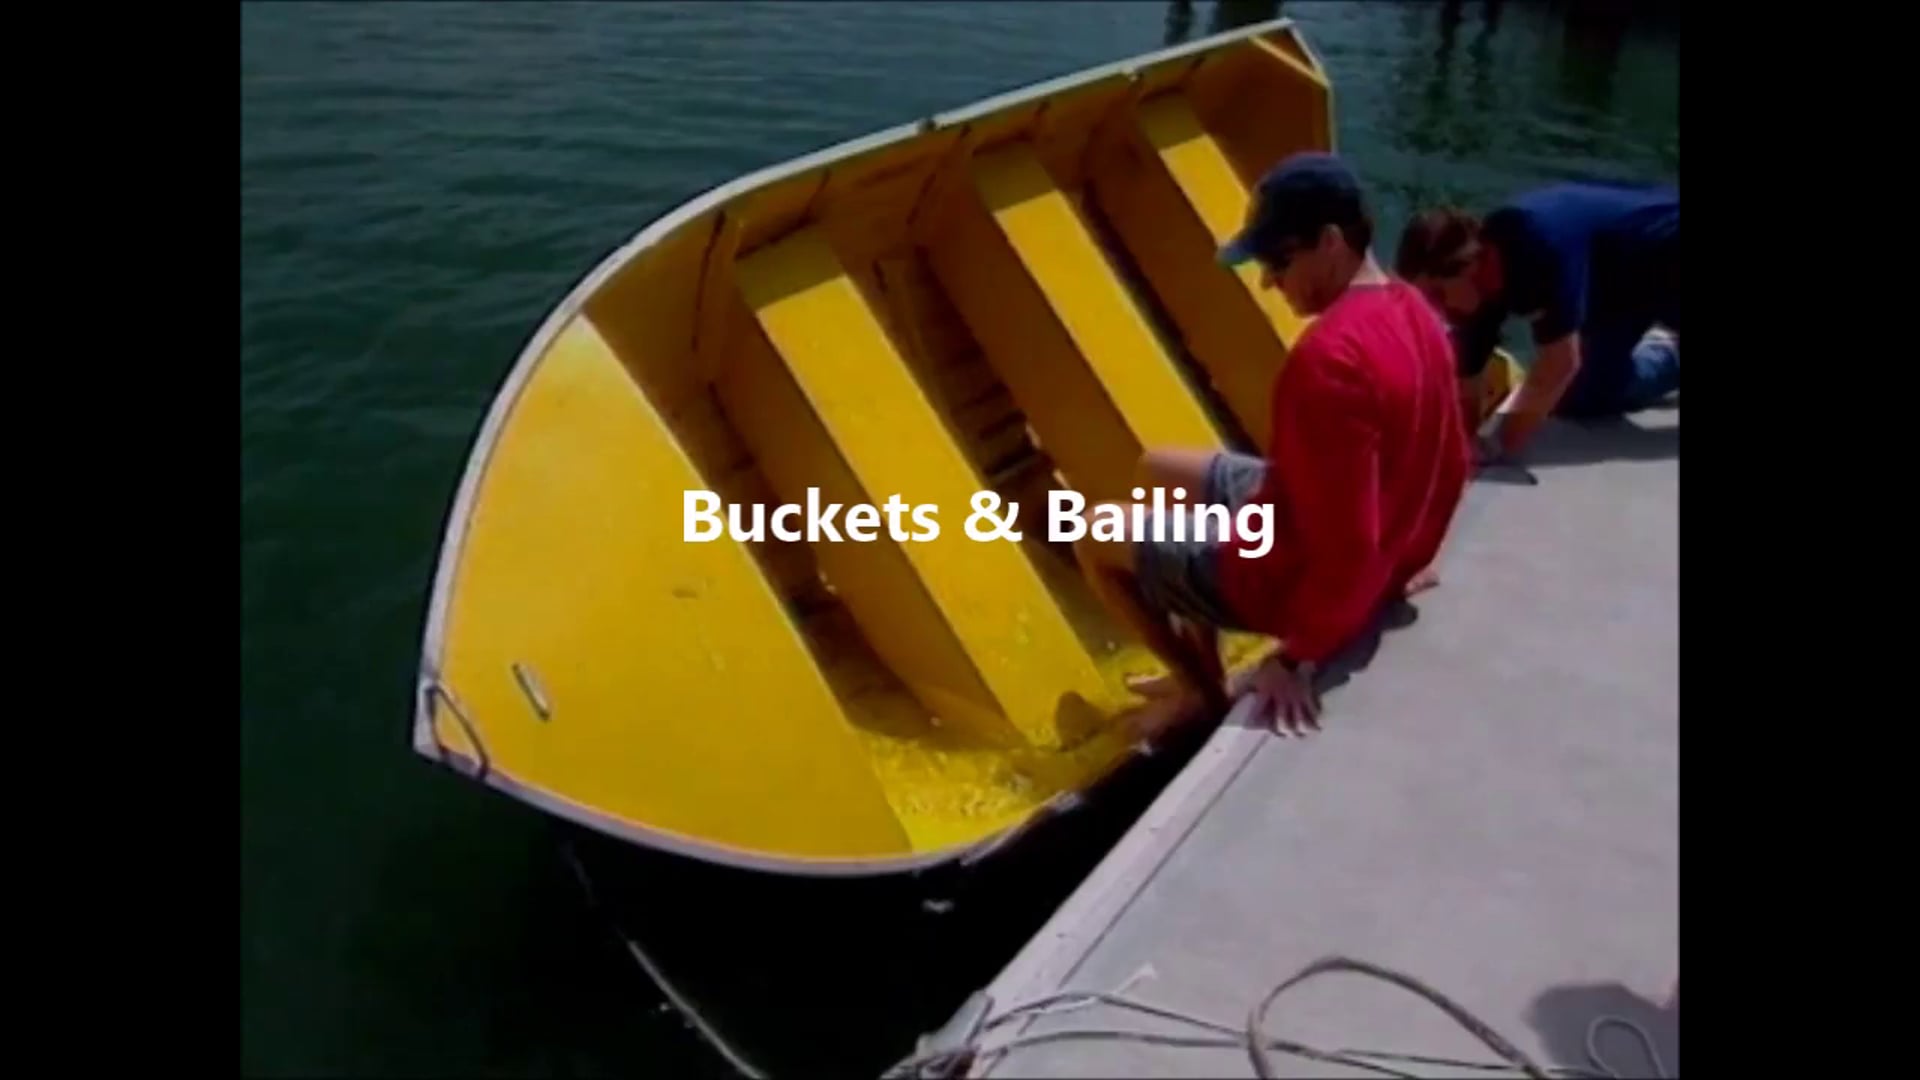 Buckets & Bailing